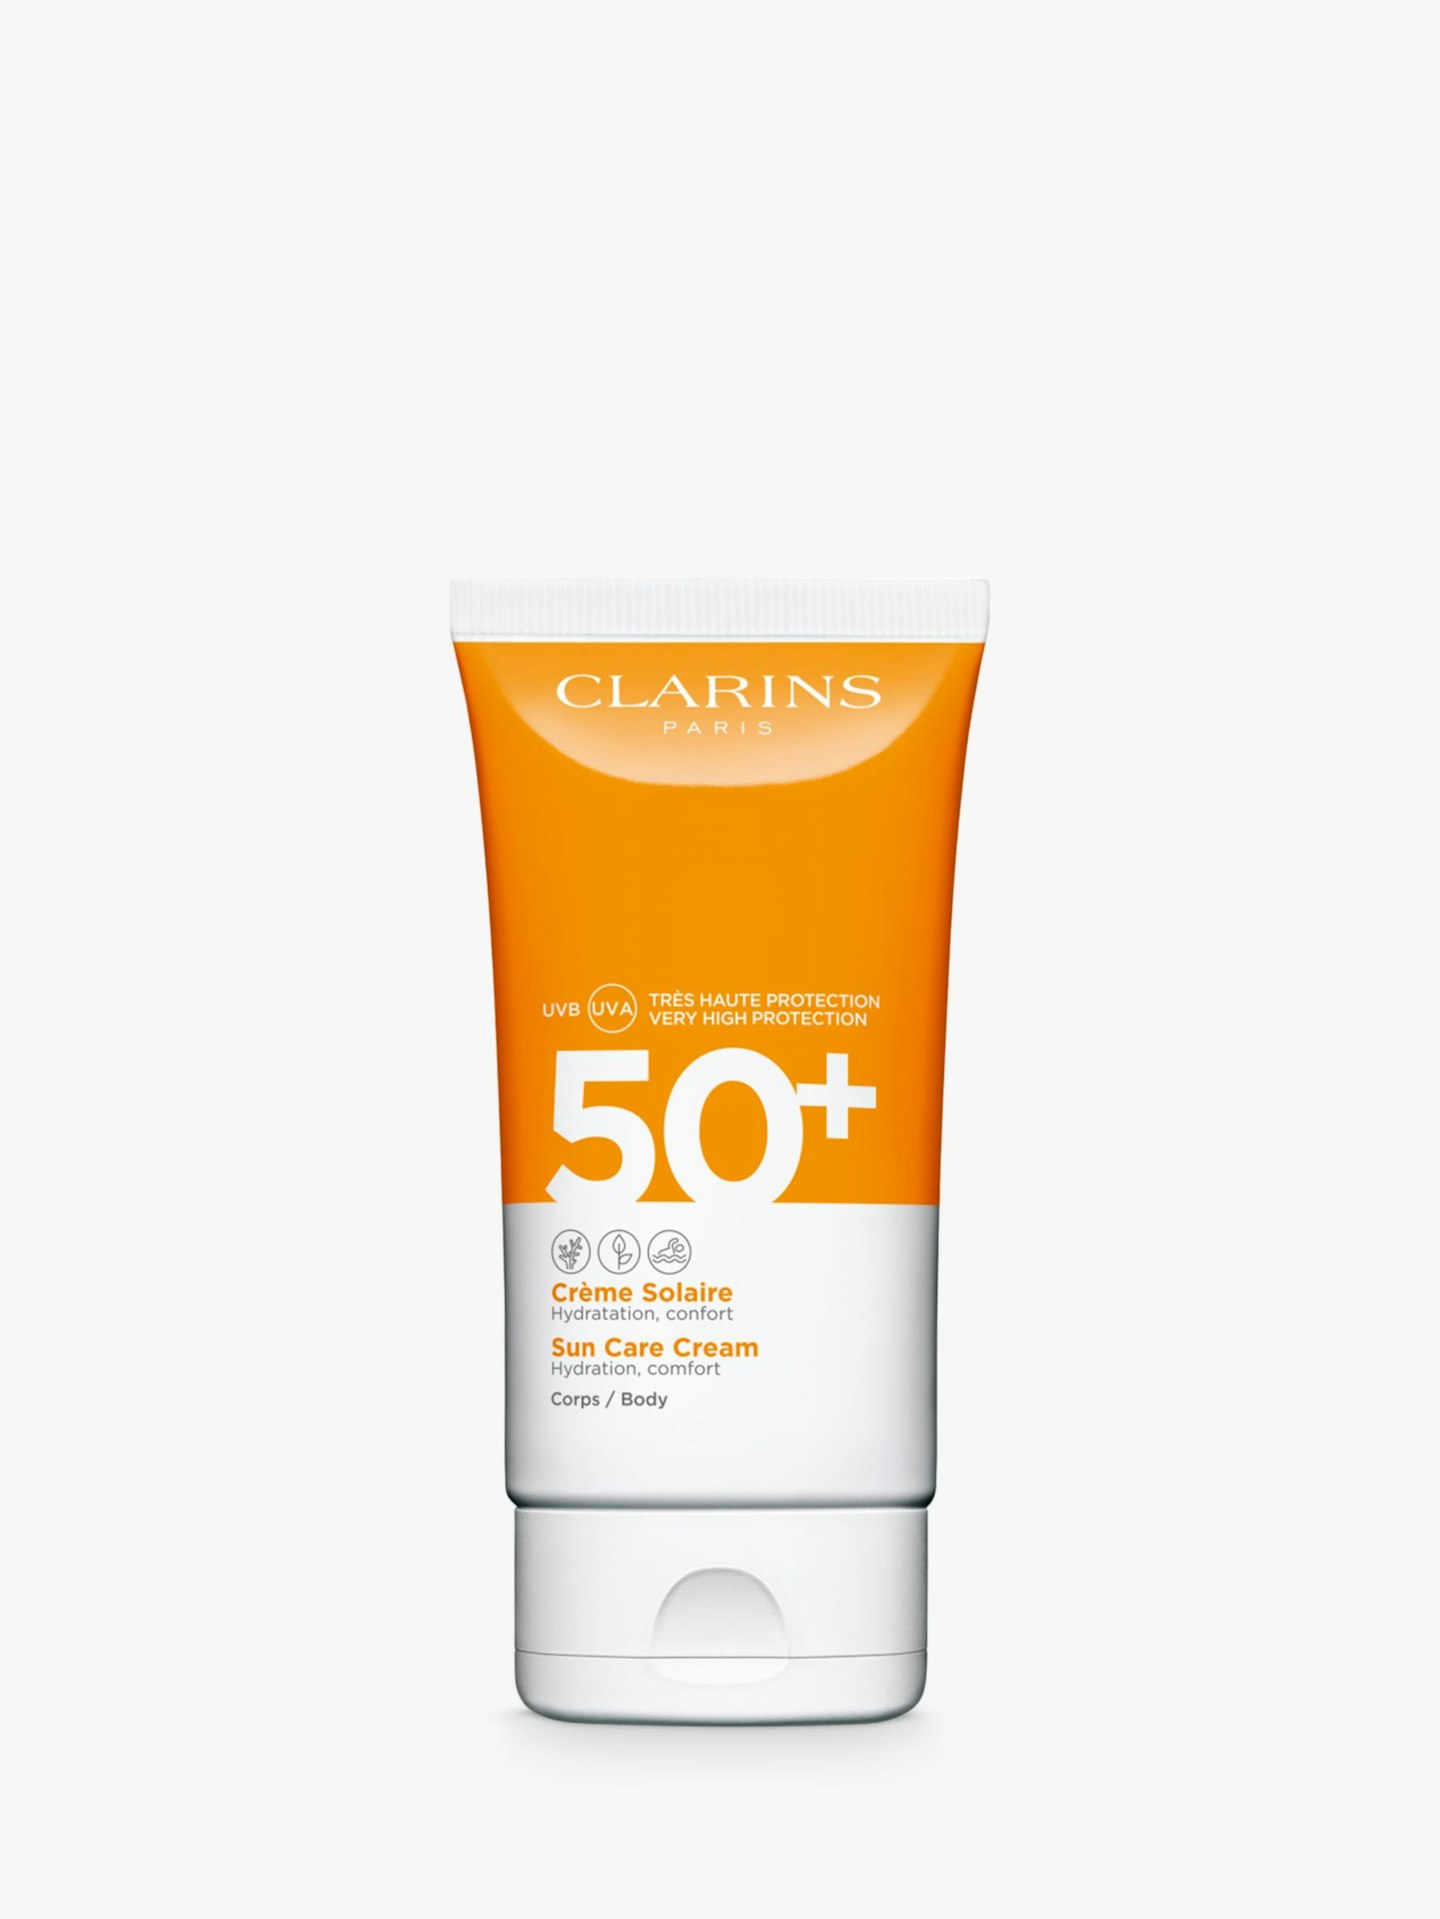 Clarins Sun Care Cream for Body SPF50+, £19.35